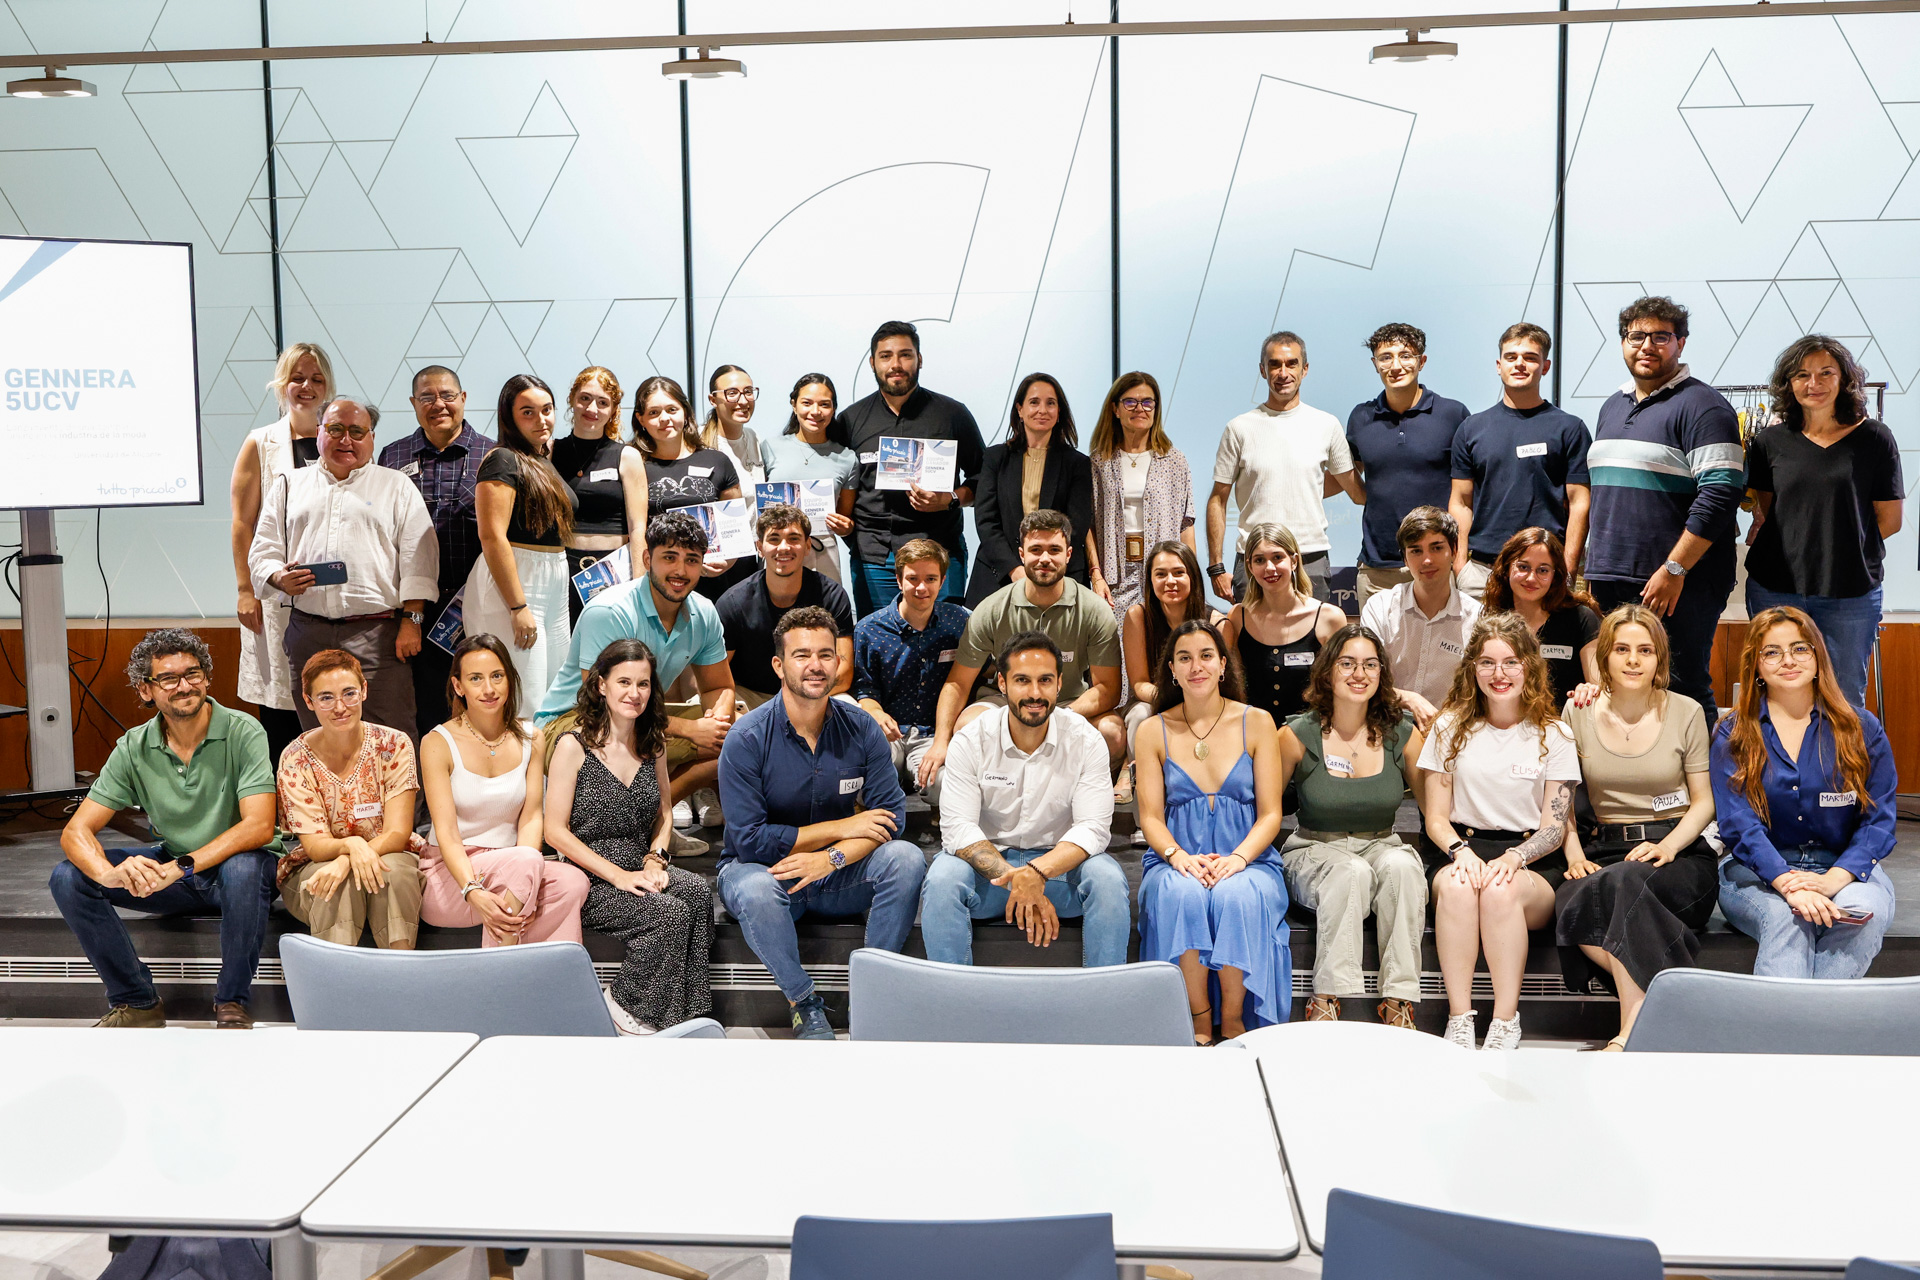 Estudiantes de las universidades públicas valencianas se dan cita en el PCA para participar en el Gennera 5UCV